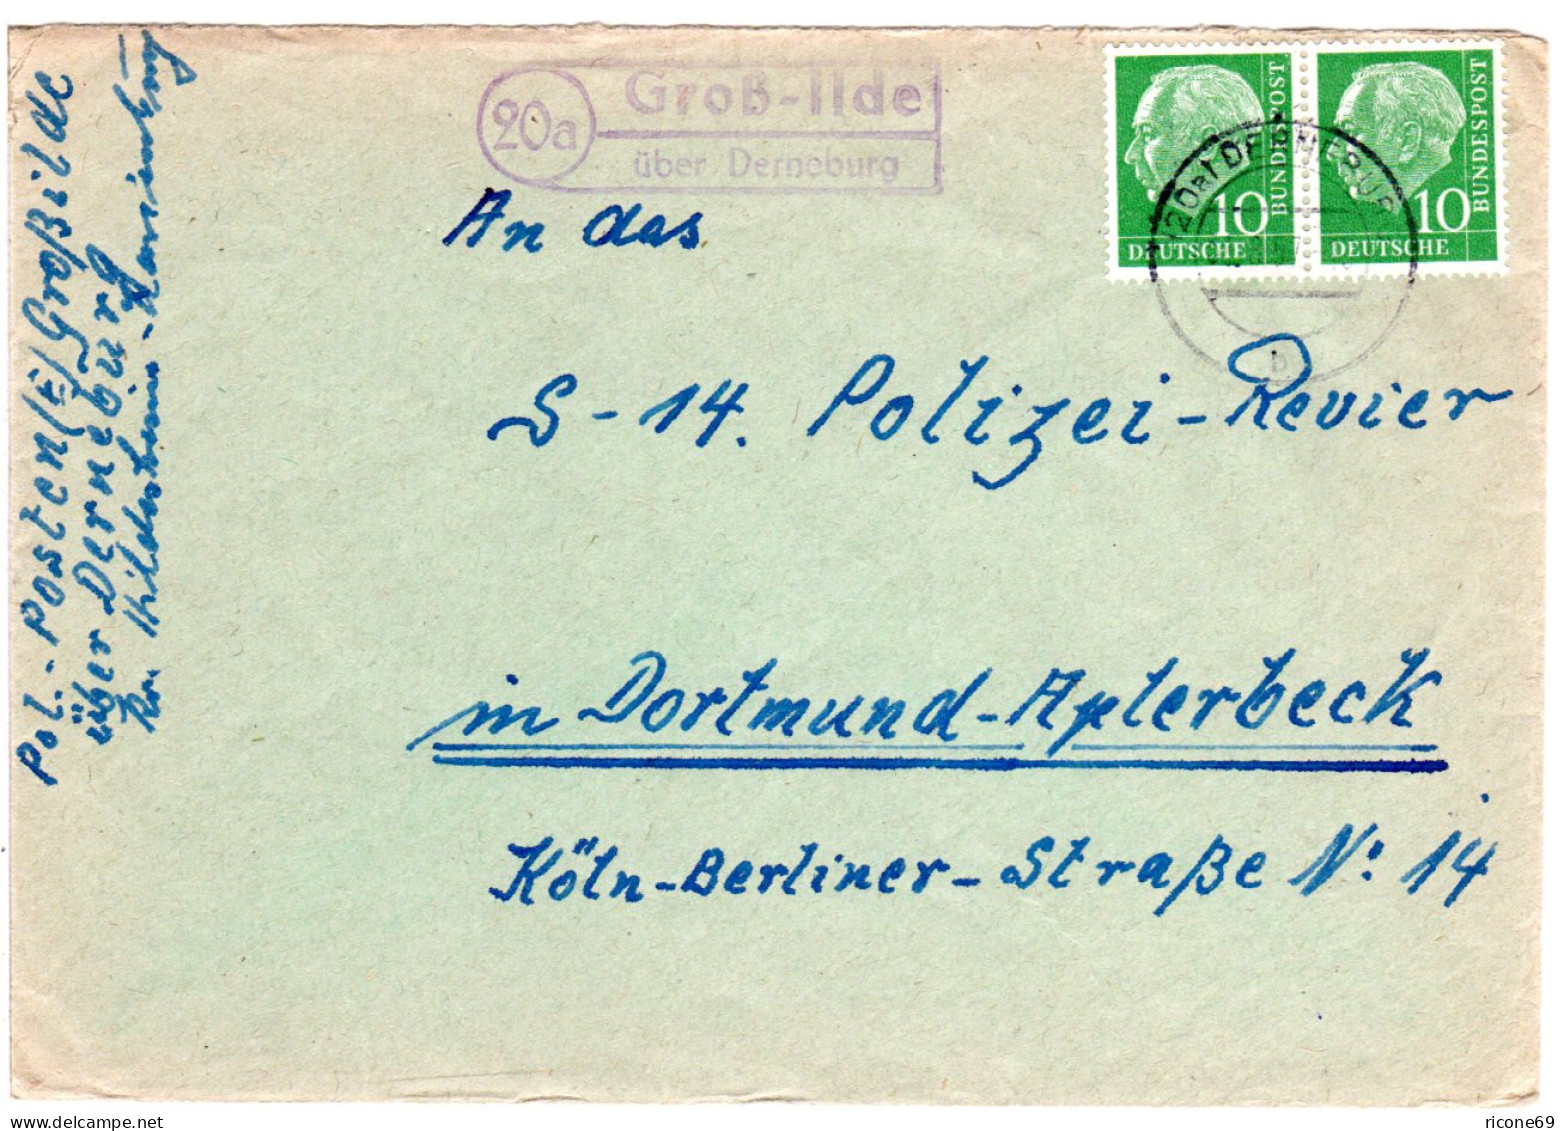 BRD 1957, Landpost Stpl. 20a GROSS-ILDE über Derneburg Auf Brief M. 2x10 Pf. - Lettres & Documents